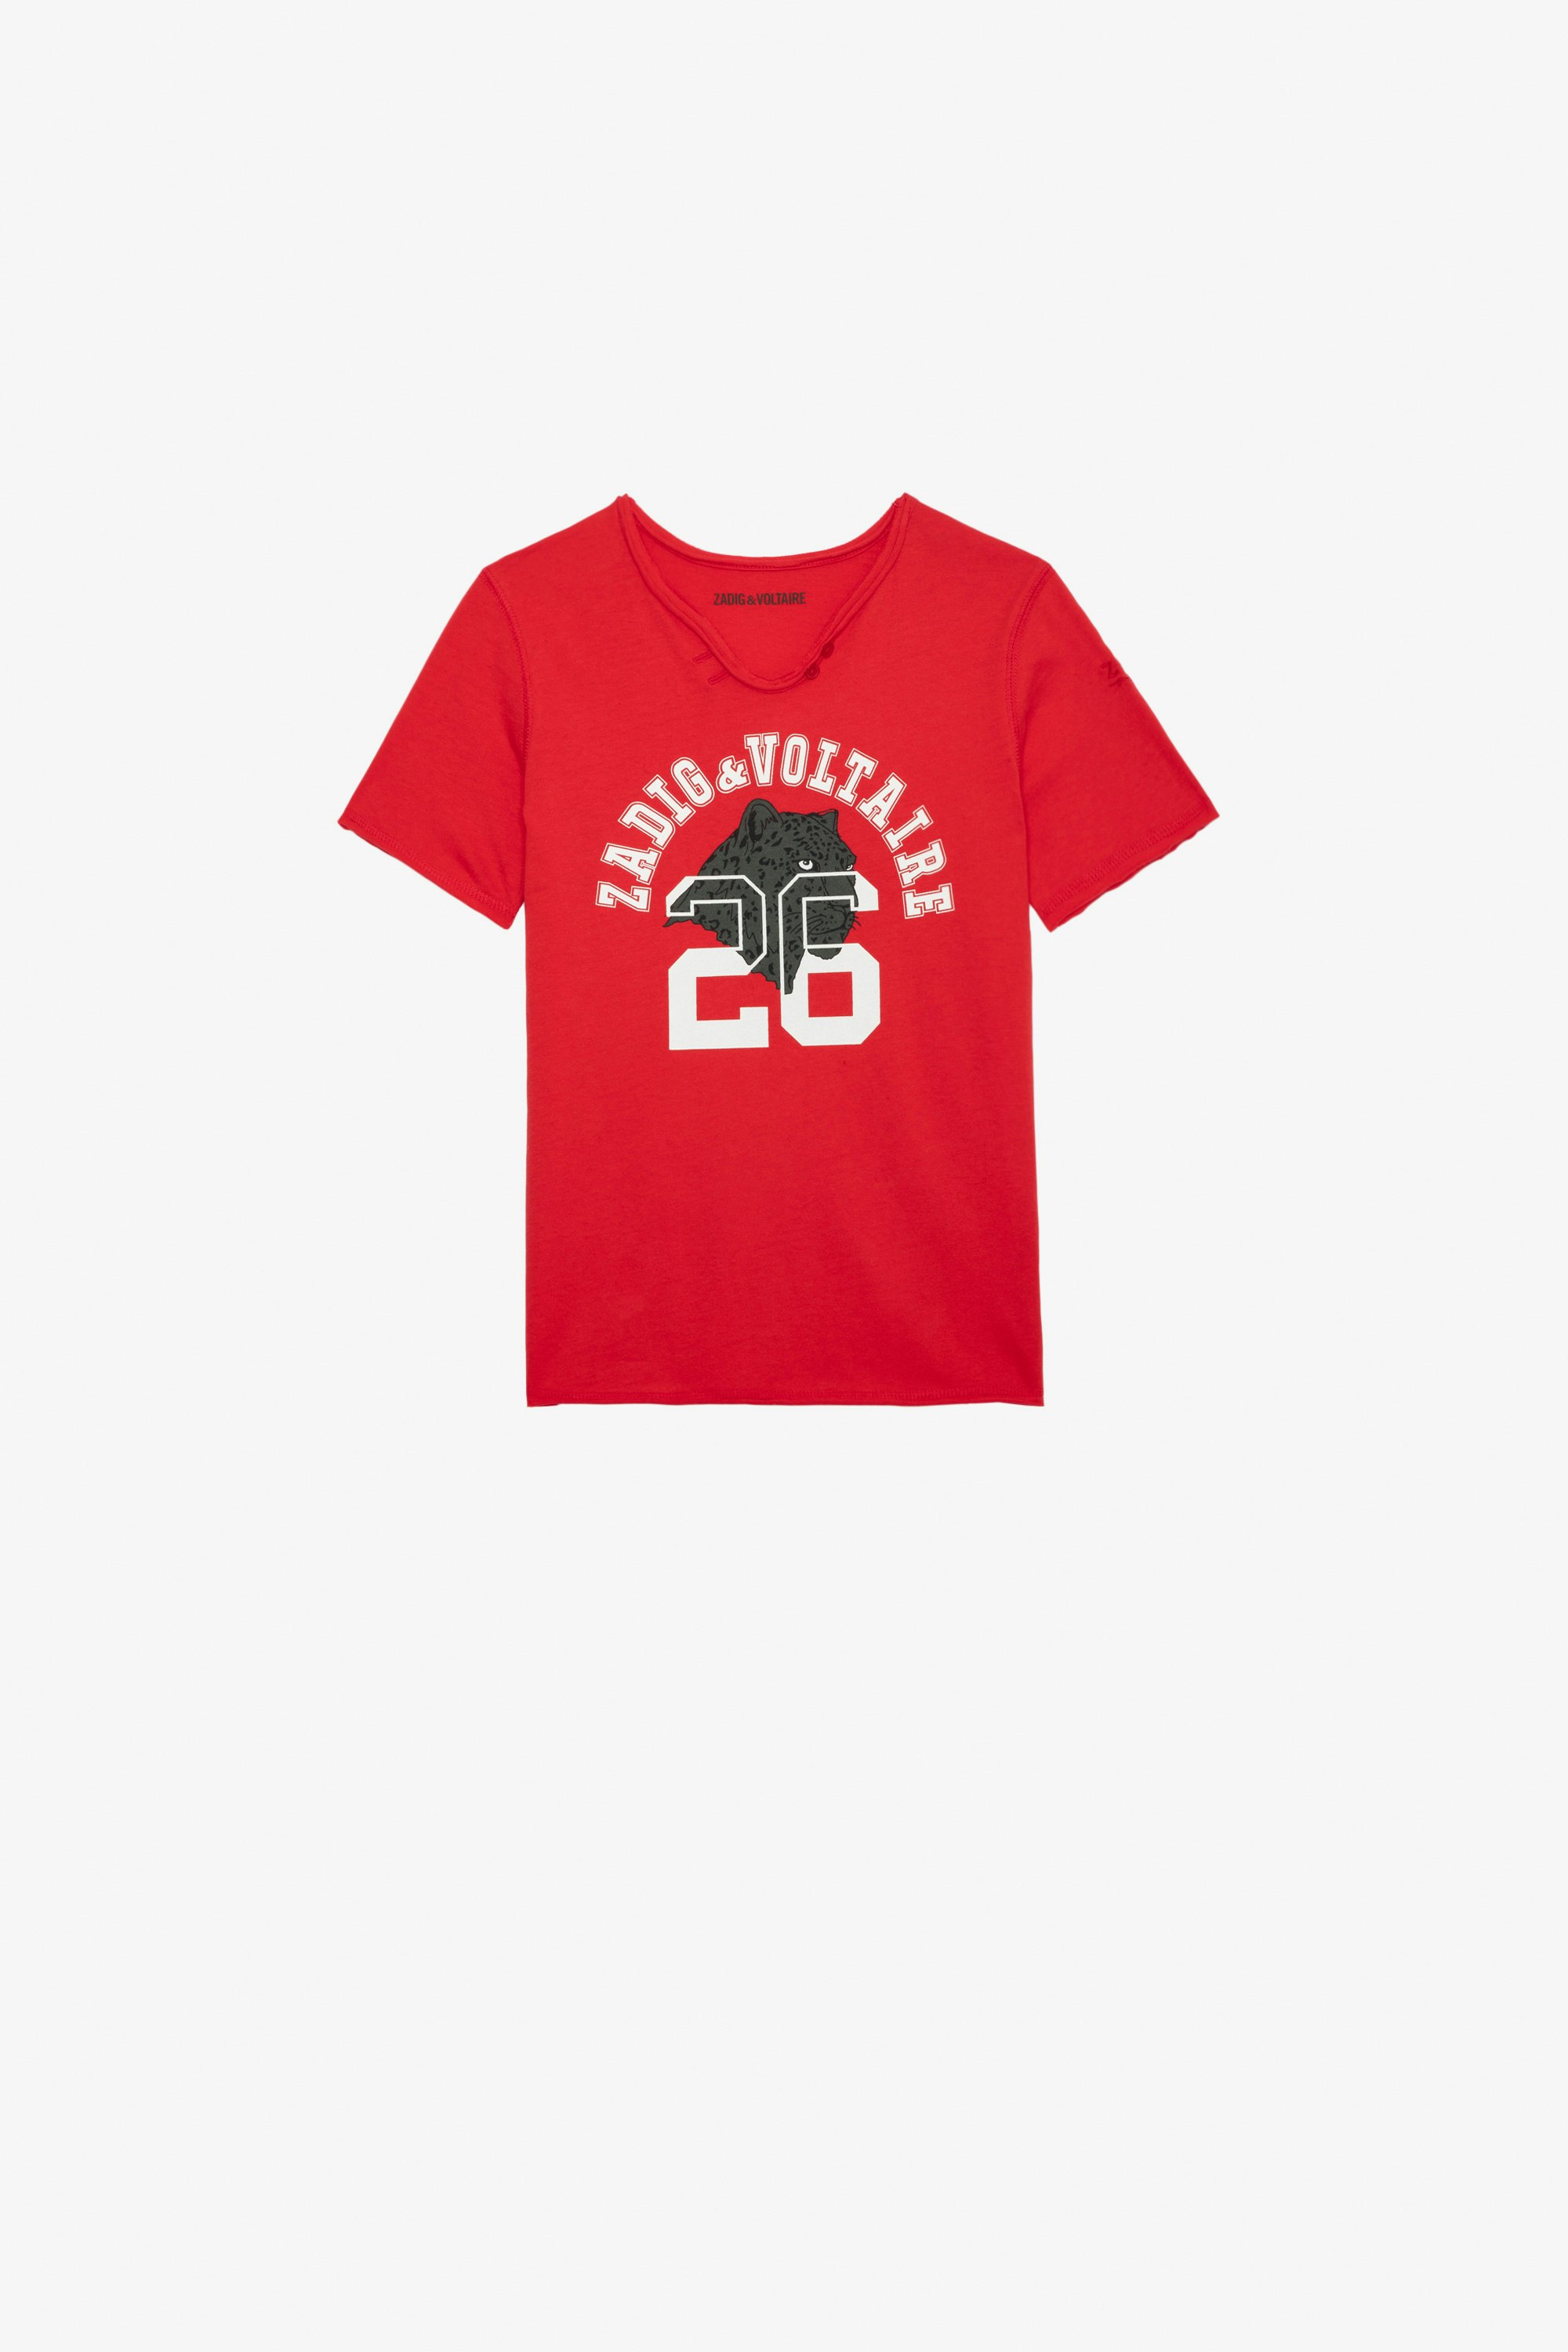 T-shirt Boxer Bambino T-shirt a maniche corte in jersey di cotone rossa con stampa da bambino.